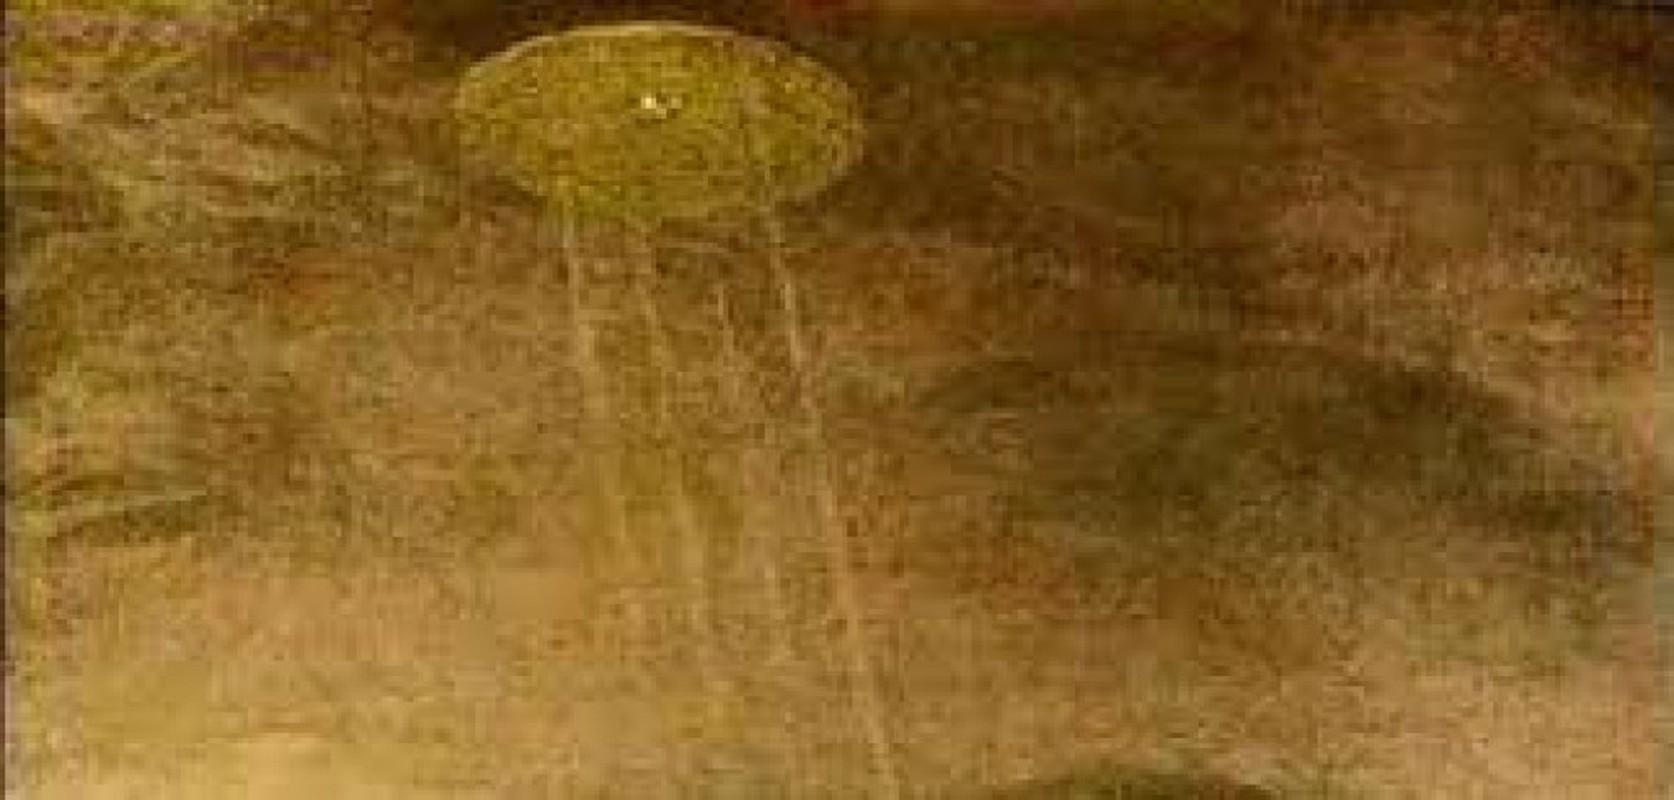 Giat minh dau vet UFO bat ngo xuat hien trong tranh ve xua-Hinh-10